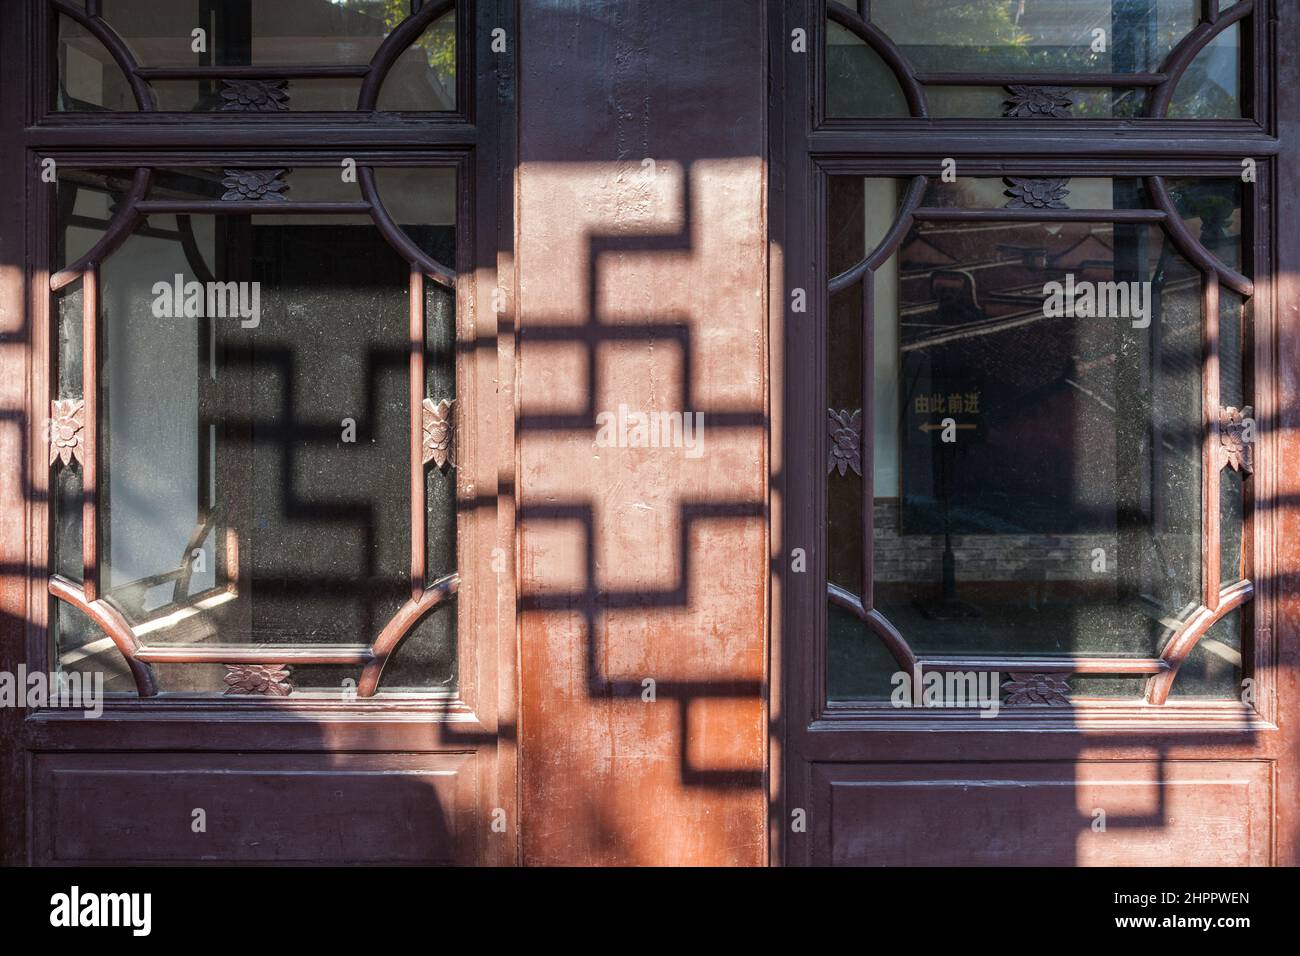 Ombra calata da latini su una facciata in legno di un edificio tradizionale nel villaggio d'acqua di Wenzhou, Cina Foto Stock